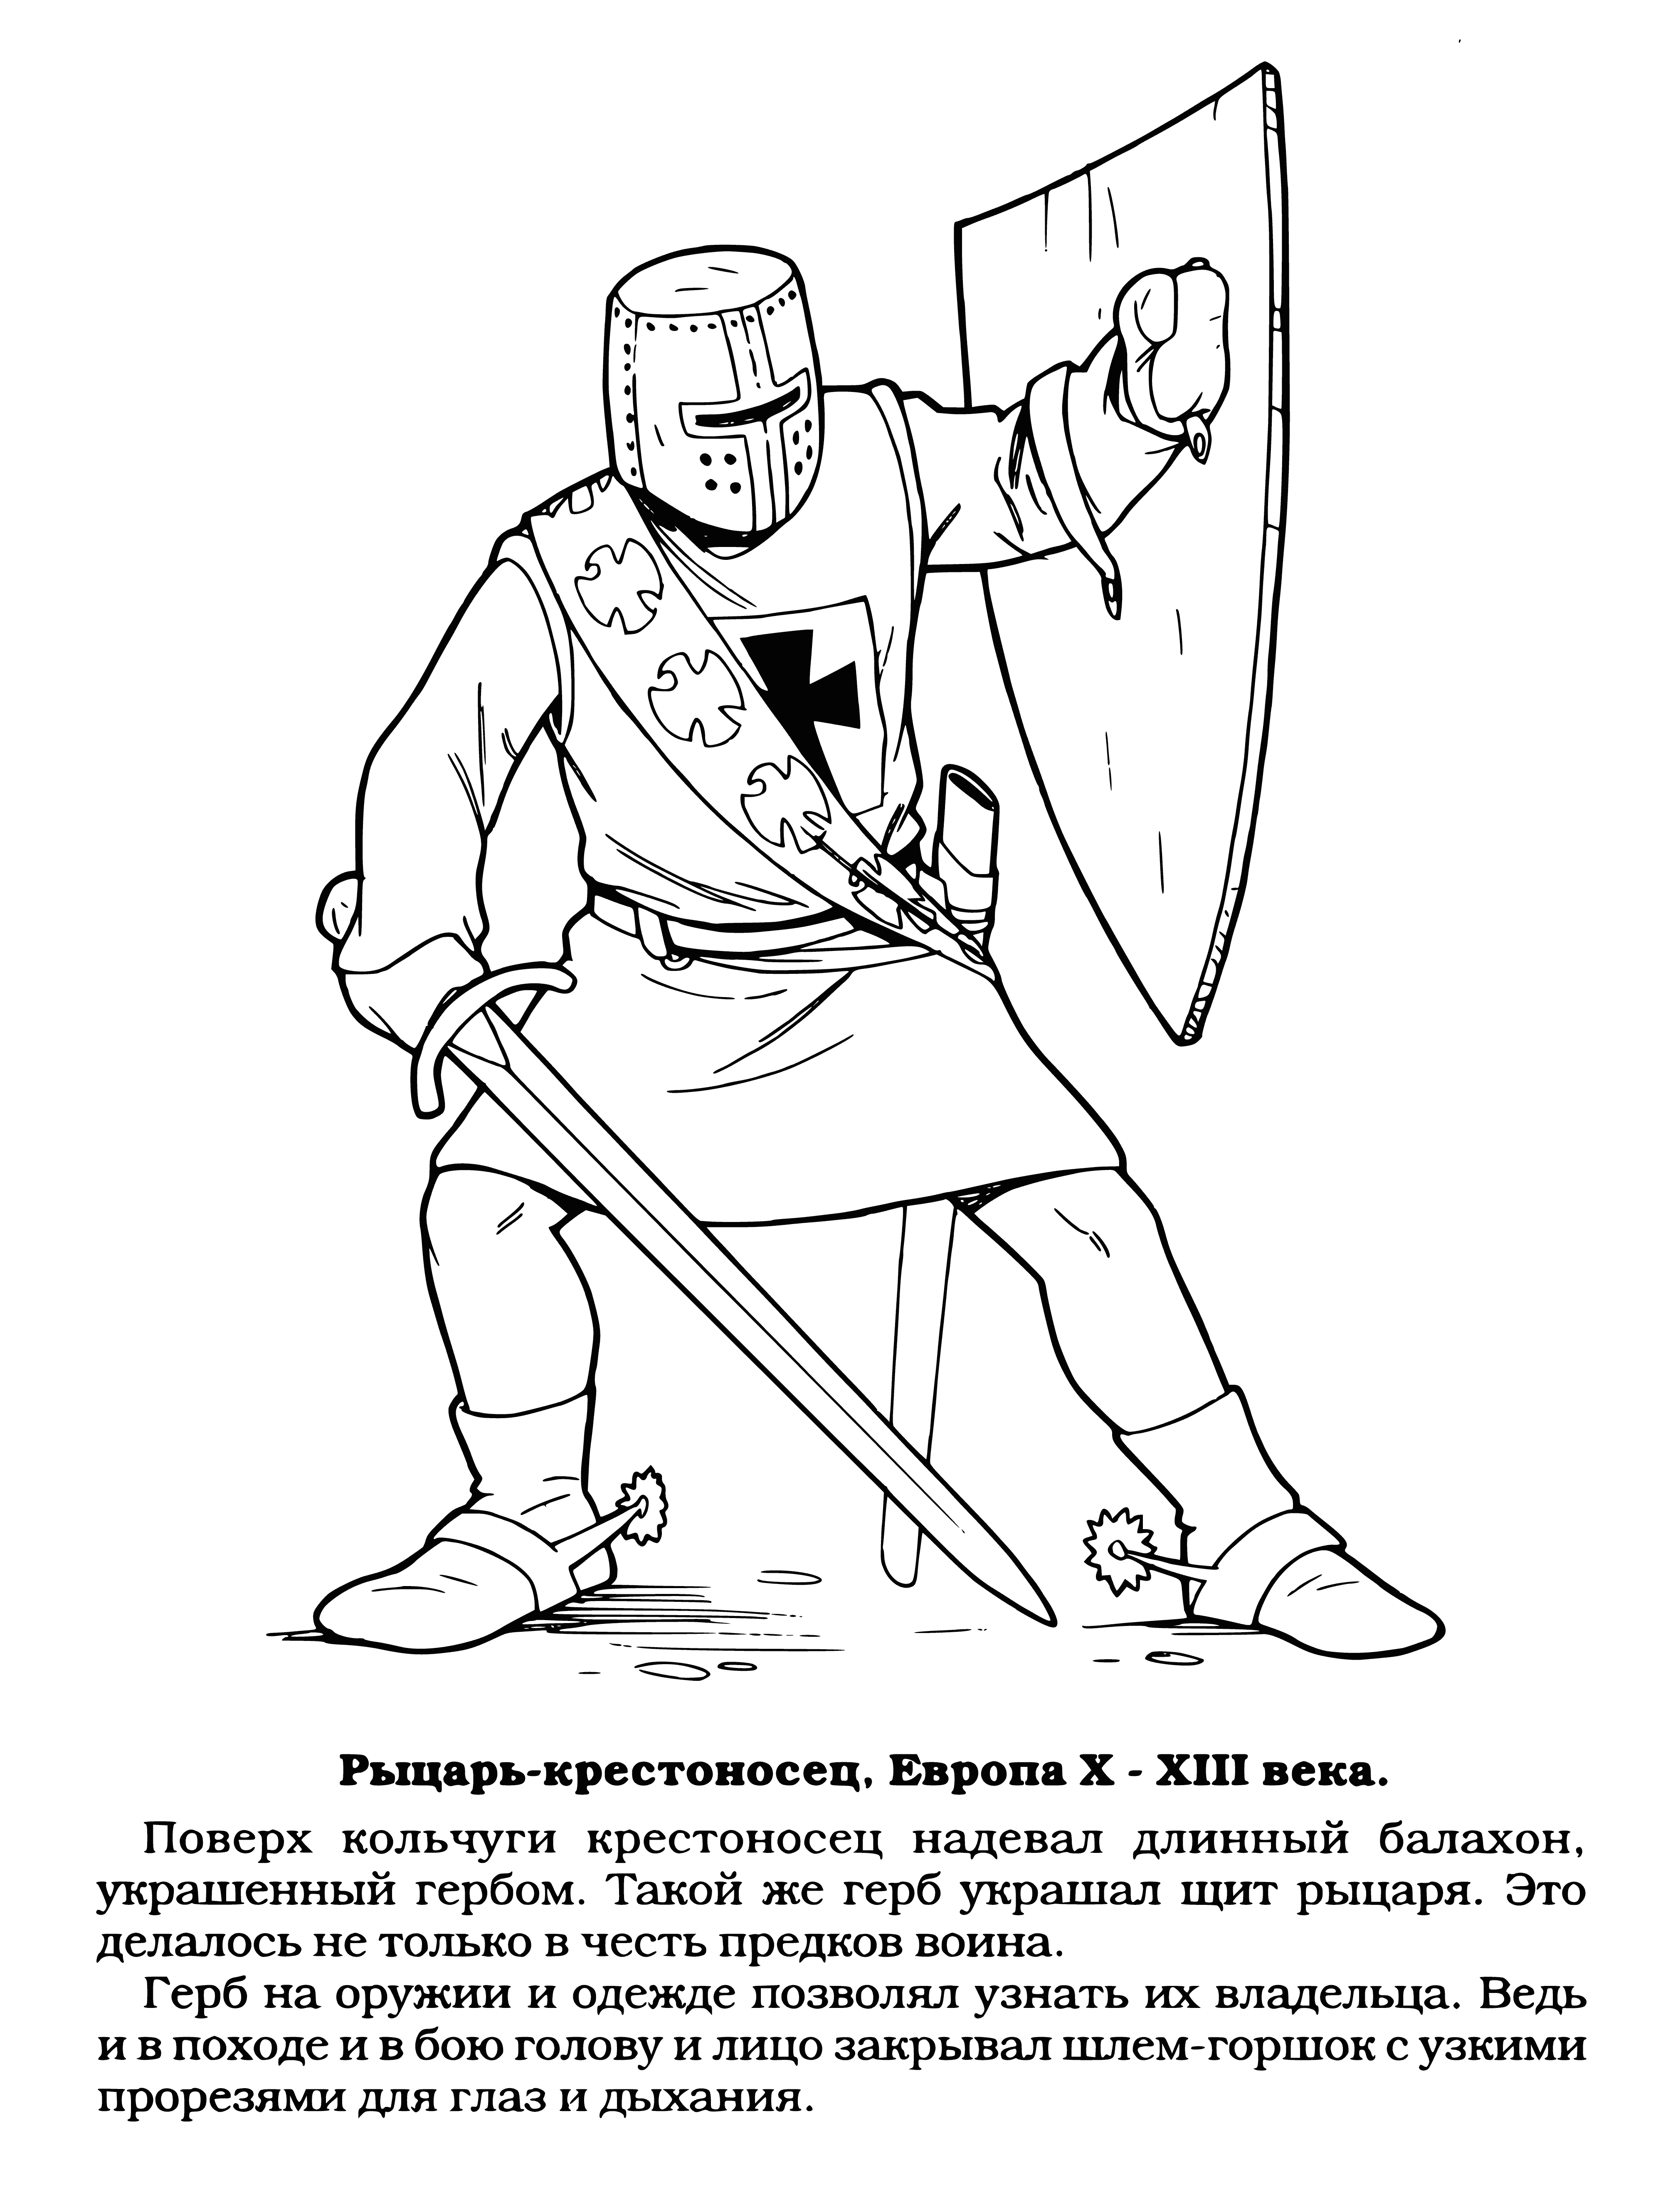 Knight Crusader coloring page